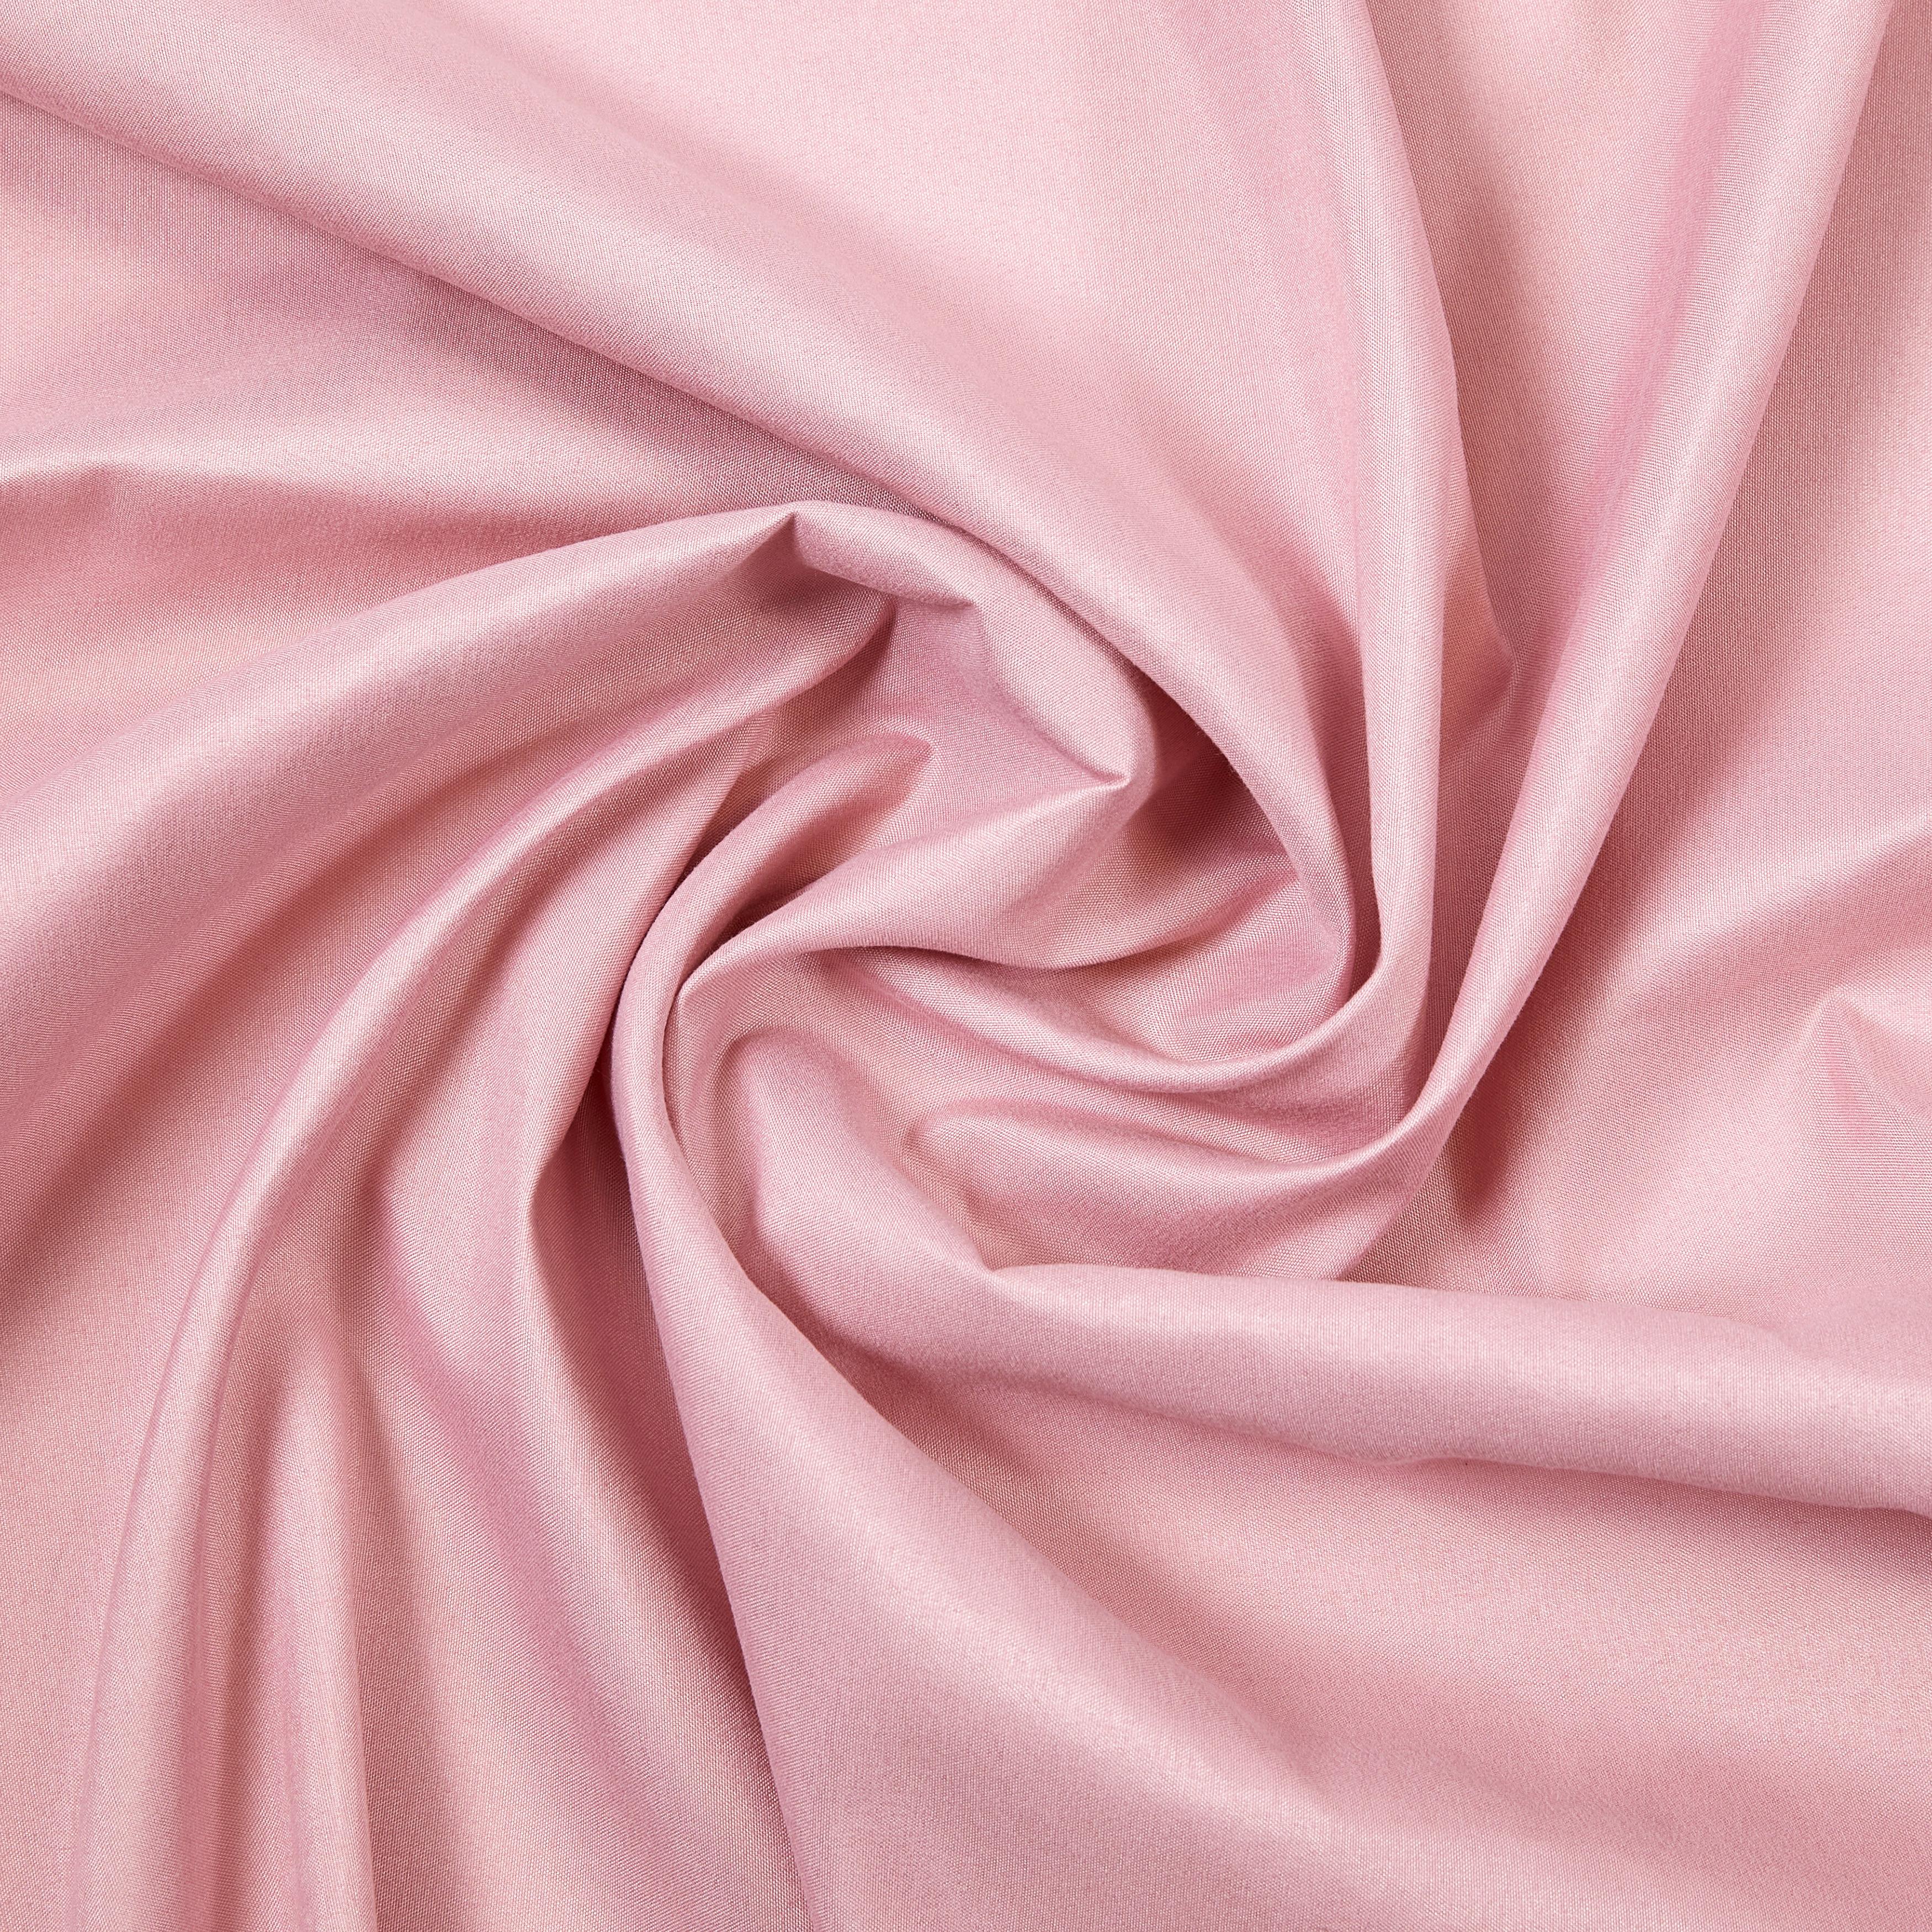 Készfüggöny Abby 140/235 - Rózsaszín, konvencionális, Textil (140/235cm) - Modern Living